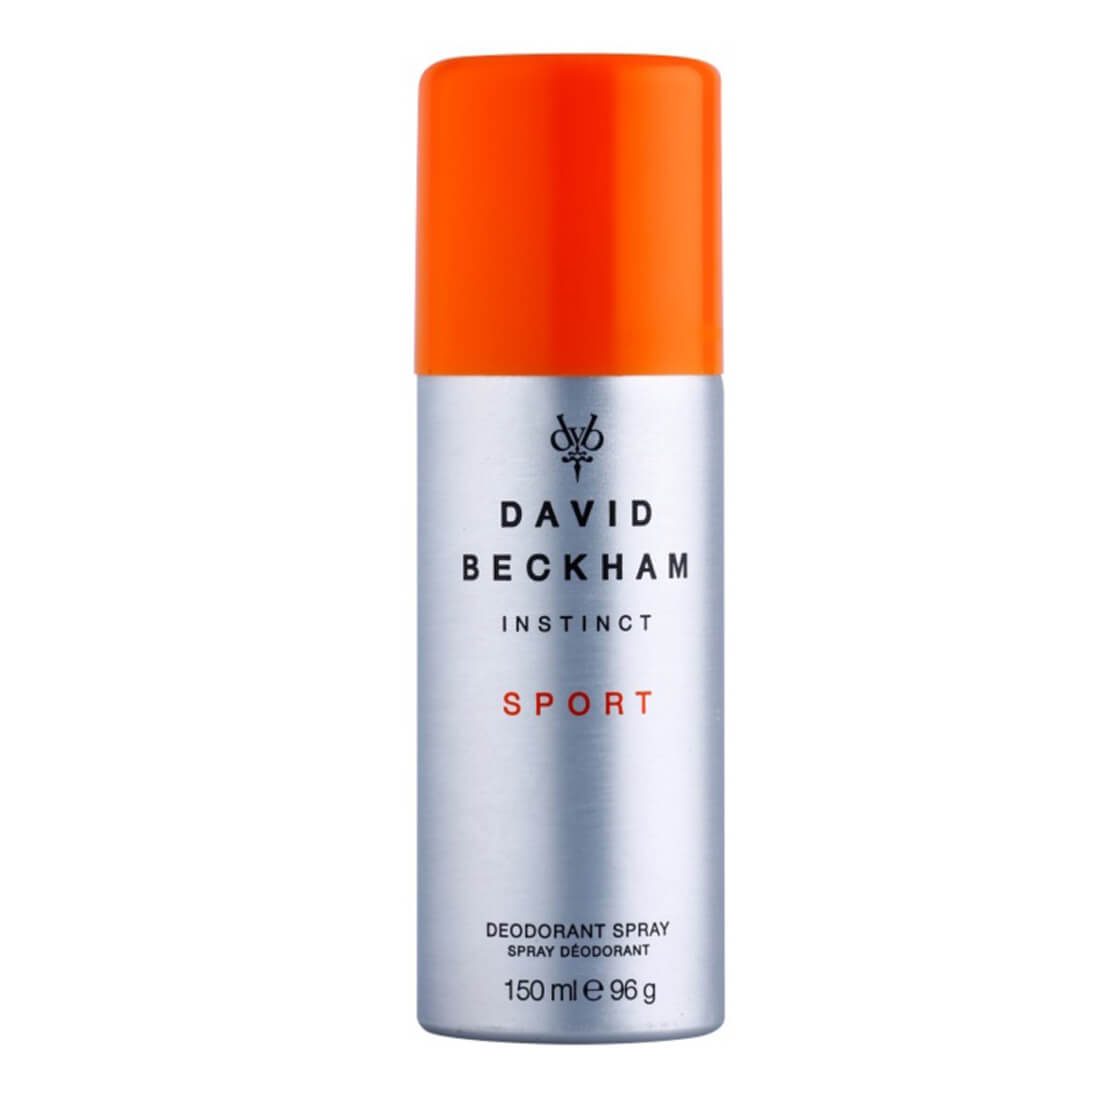 David Beckham Instinct Sport Deodorant For Men -150ml